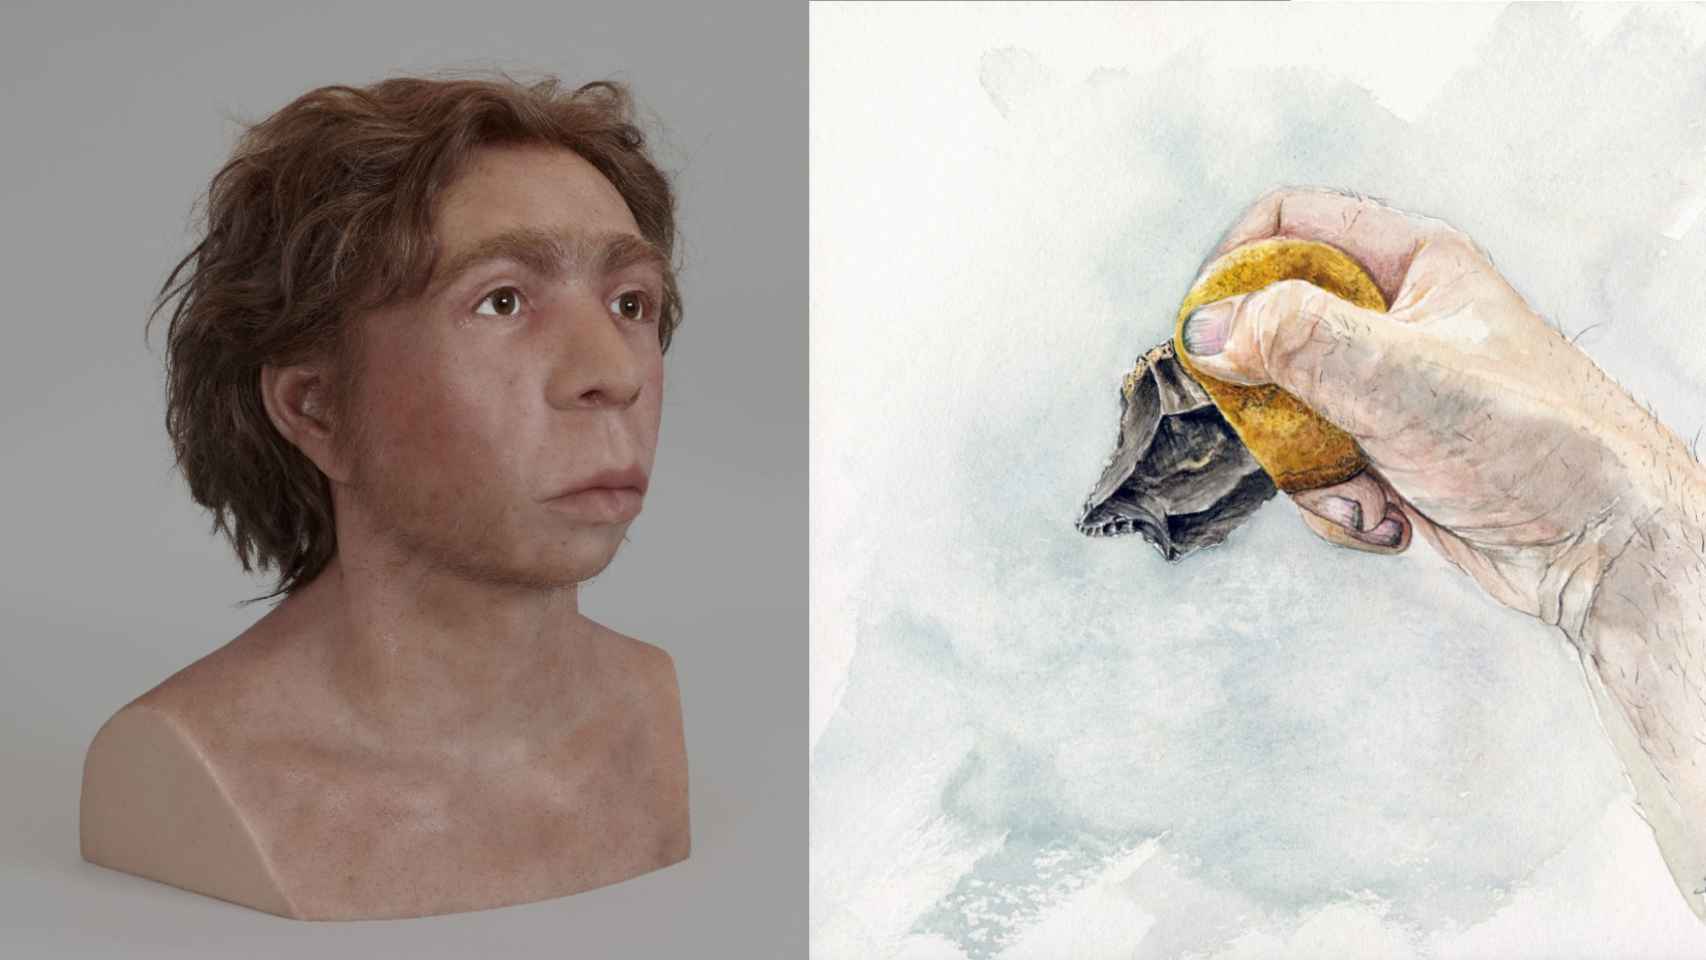 hallazgo sorprendente: la desconocida capacidad de los neandertales que era exclusiva de los sapiens